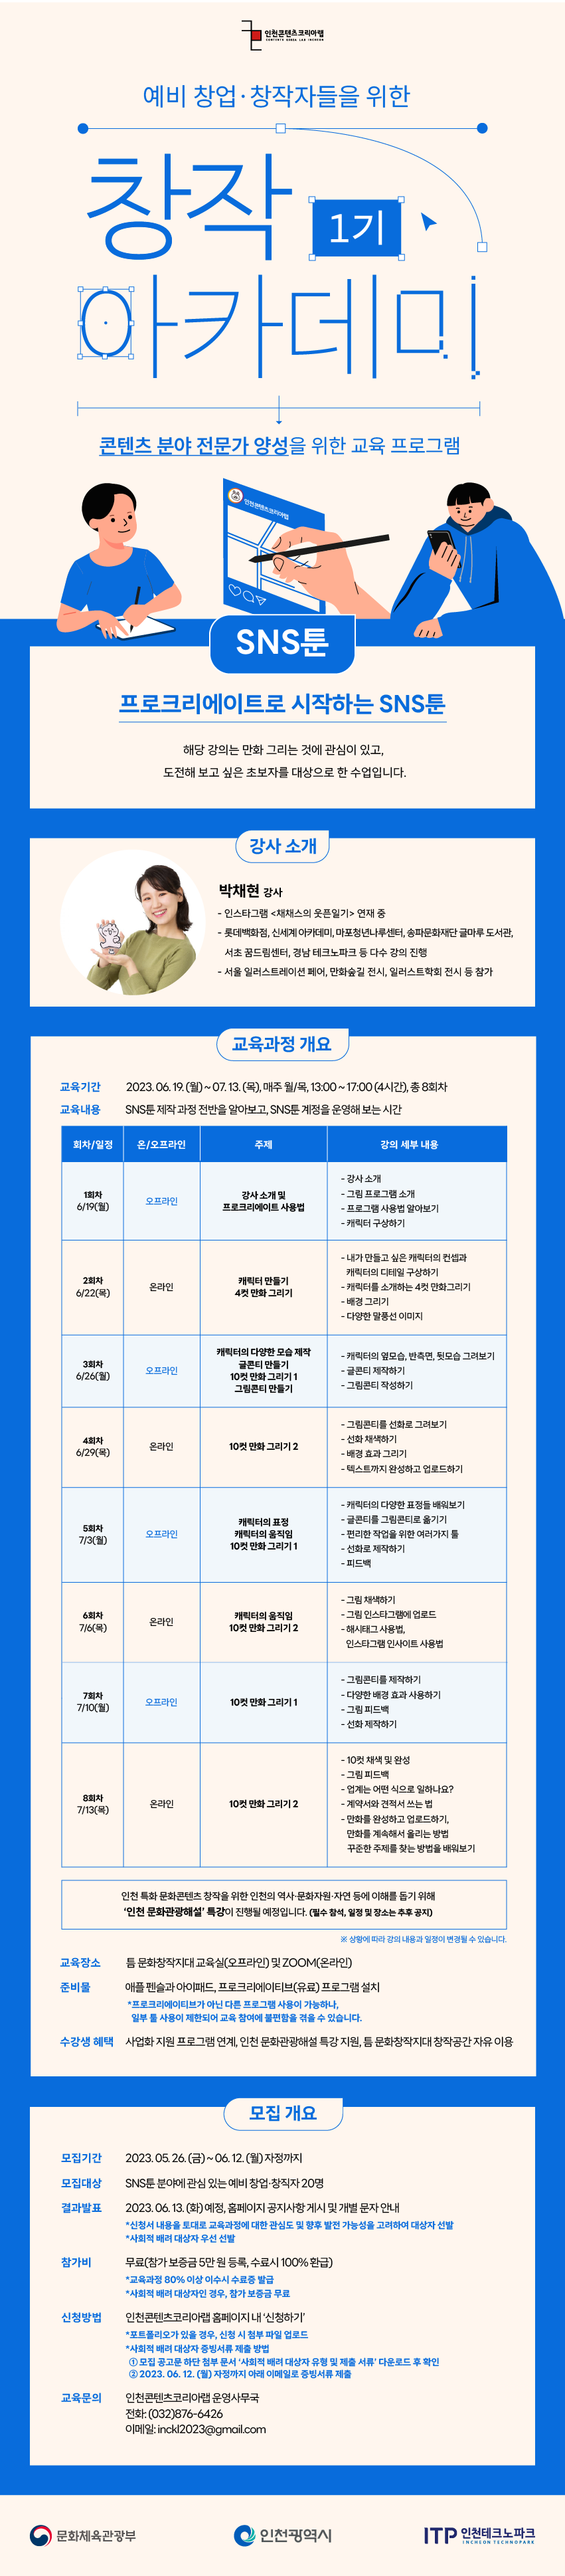 [무료 교육] 창작 아카데미 1기 - SNS툰(기초과정) 수강생 모집